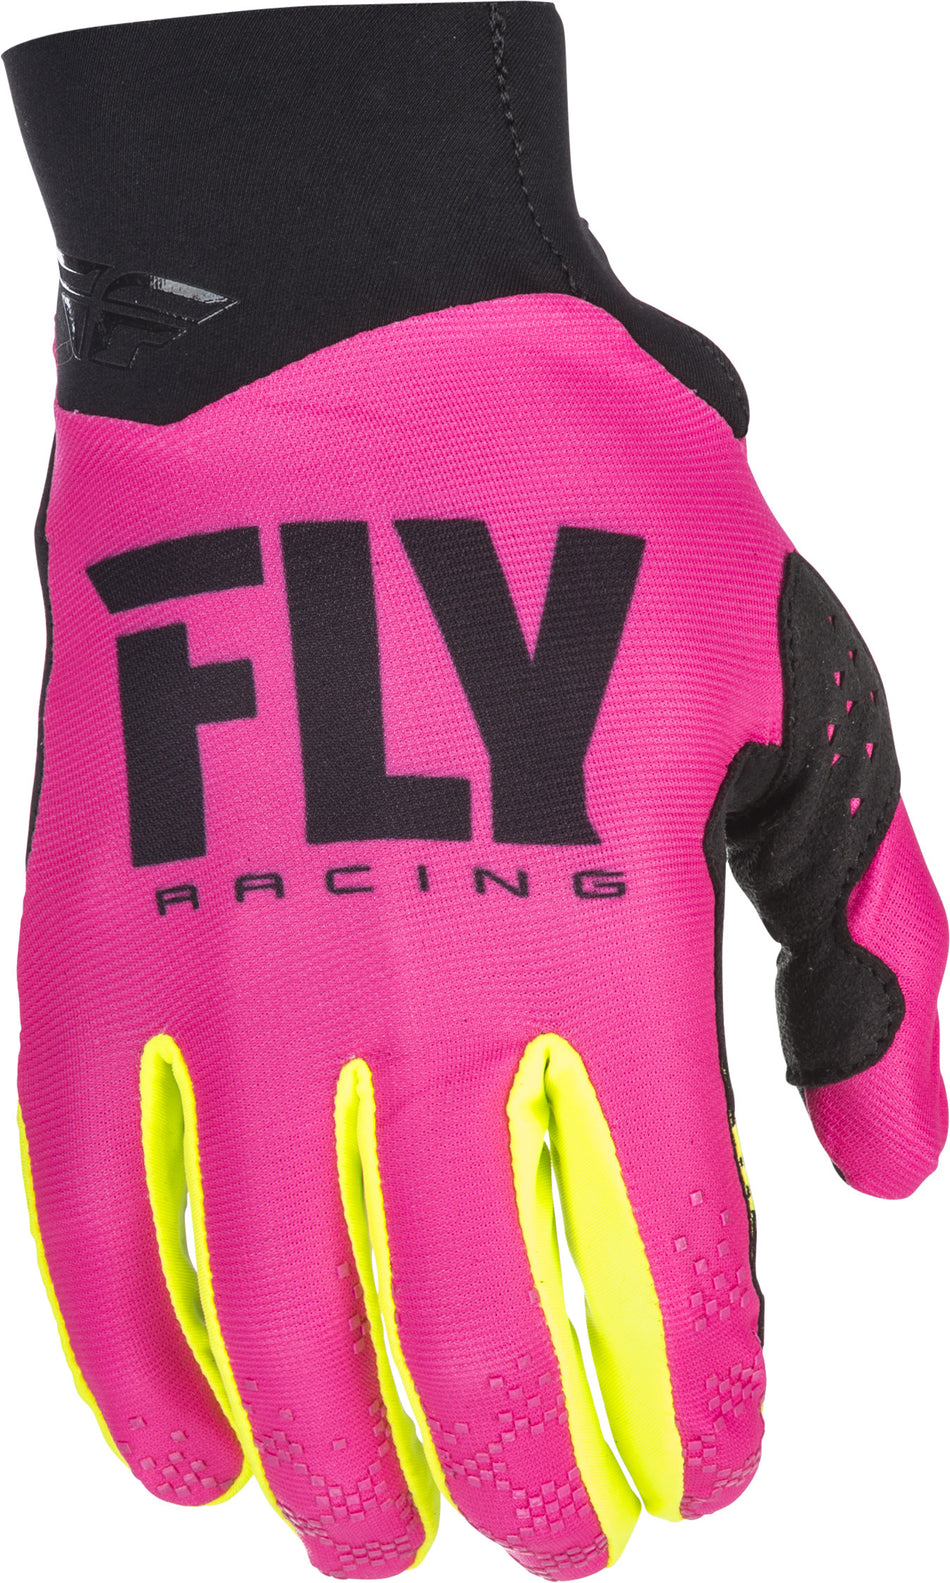 FLY RACING Pro Lite Gloves Neon Pink/Hi-Vis Sz 11 371-81711